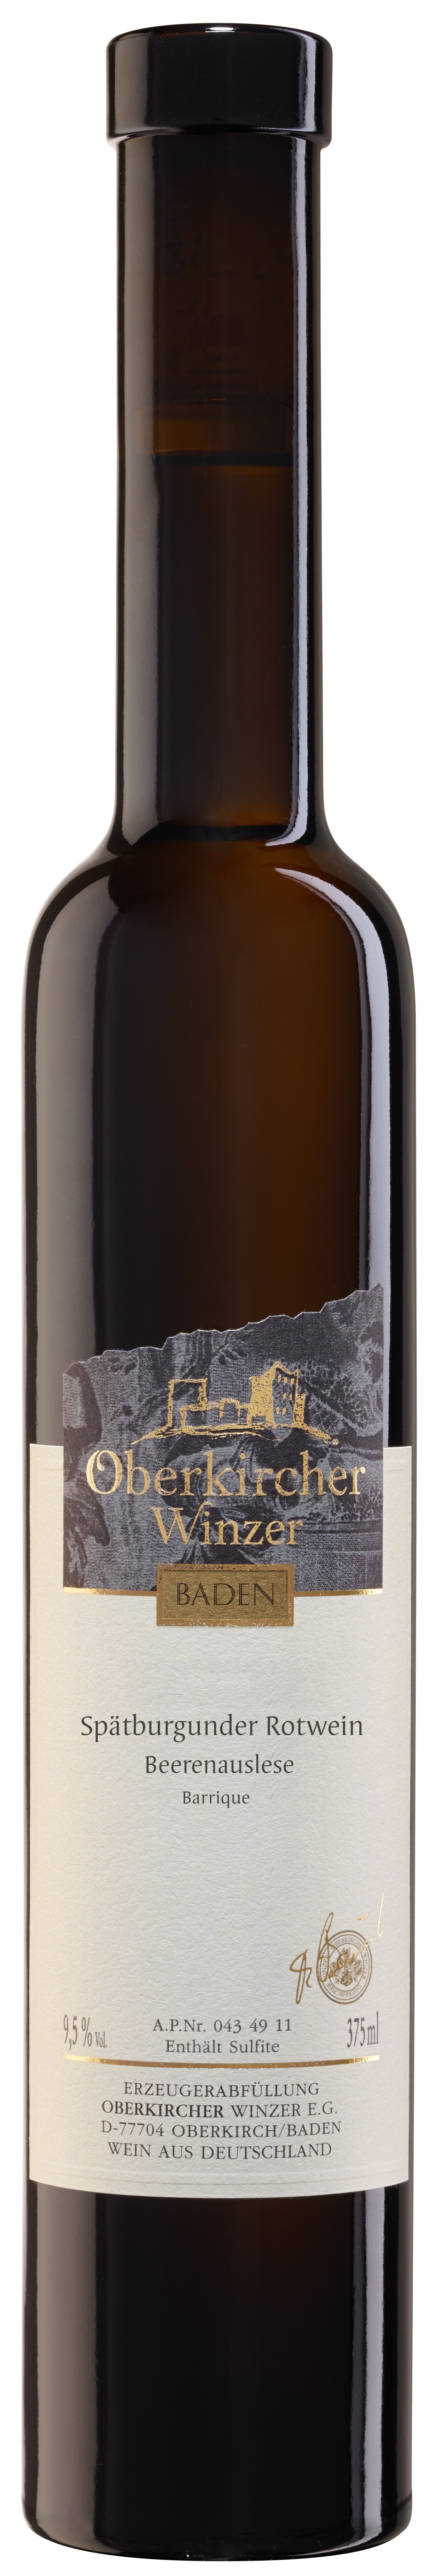 Collection Oberkirch, Spätburgunder Rotwein Beerenauslese -Barrique-